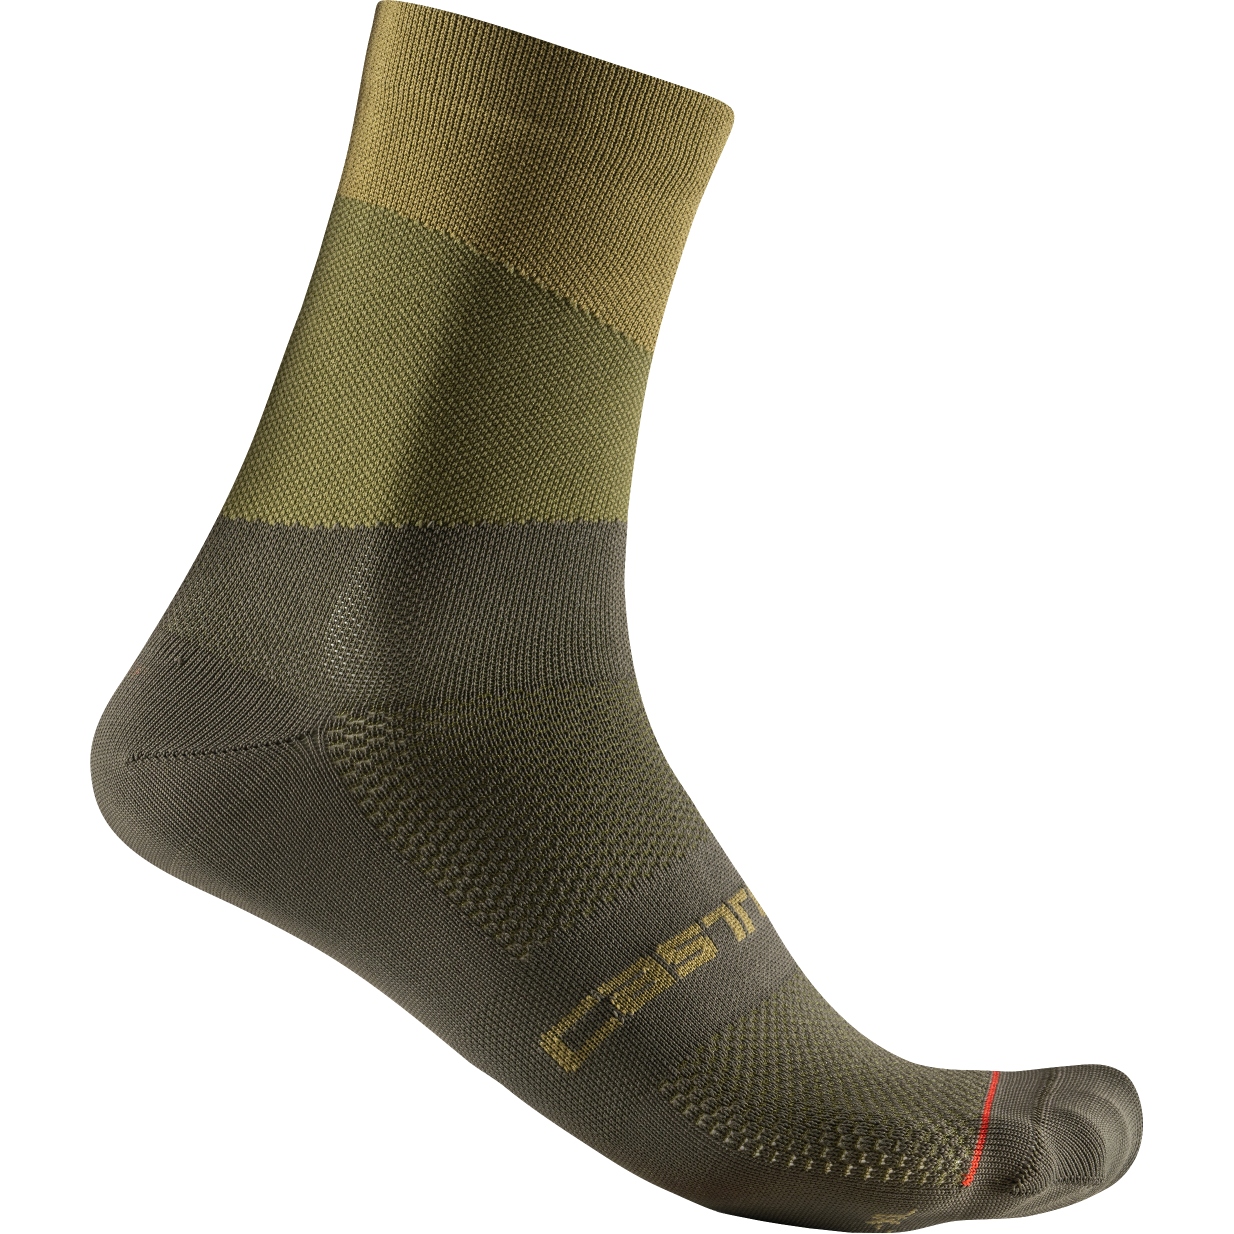 Produktbild von Castelli Orizzonte 15 Socken - sage/deep green 310